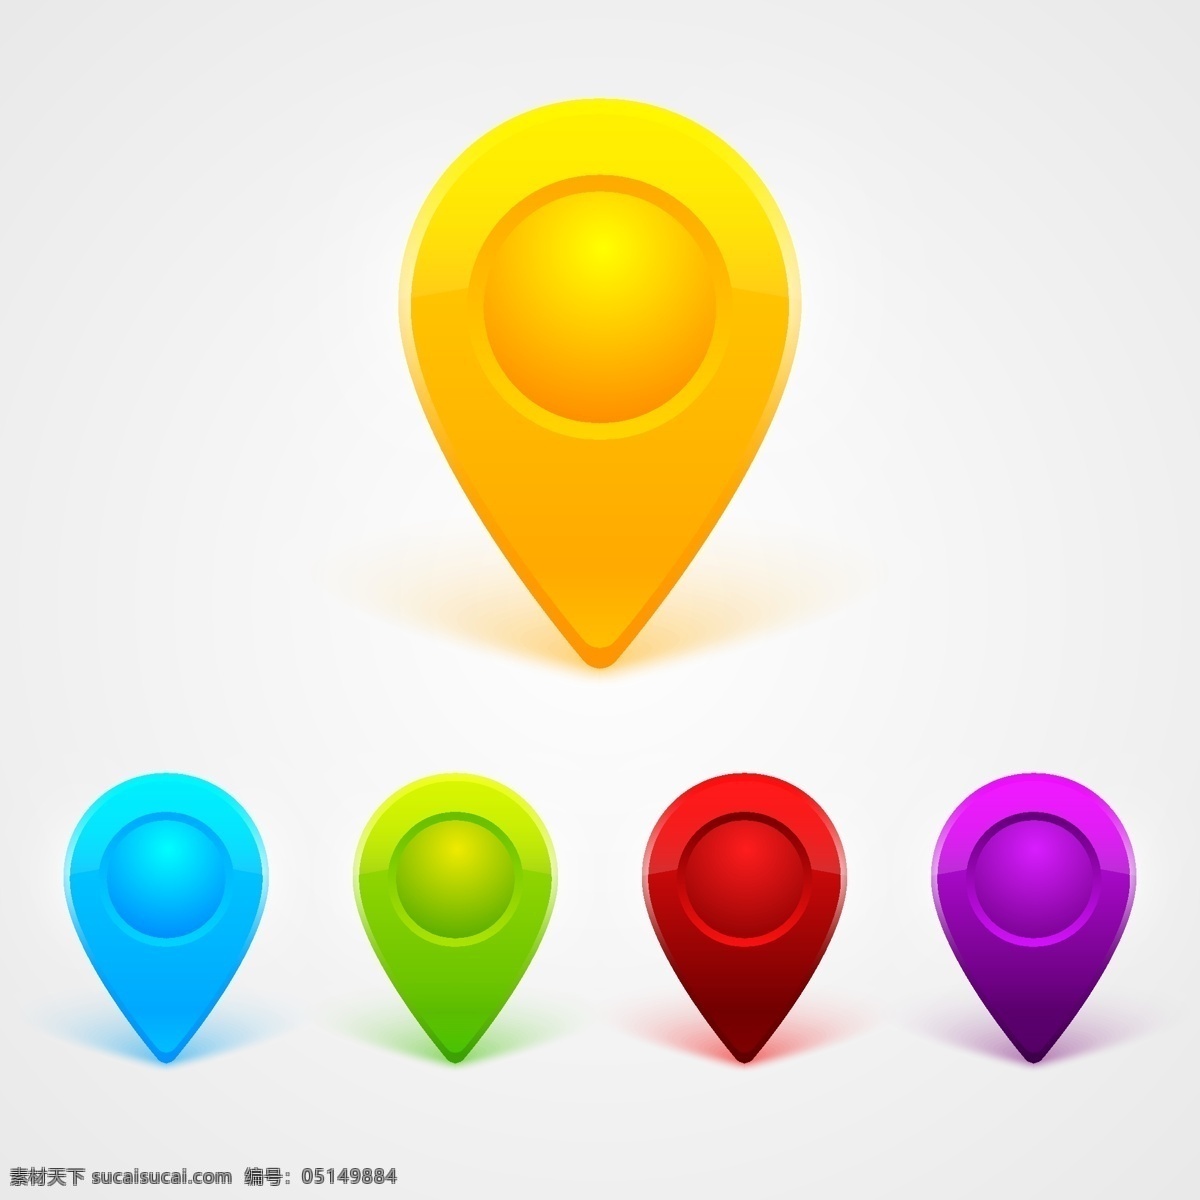 彩色地图针套 箭头 图标 地图 按钮 互联网 三维 标志 丰富多彩 销 定位 搜索 全球定位系统 符号 标记 指针 导航 方向 地图图标 引脚 白色